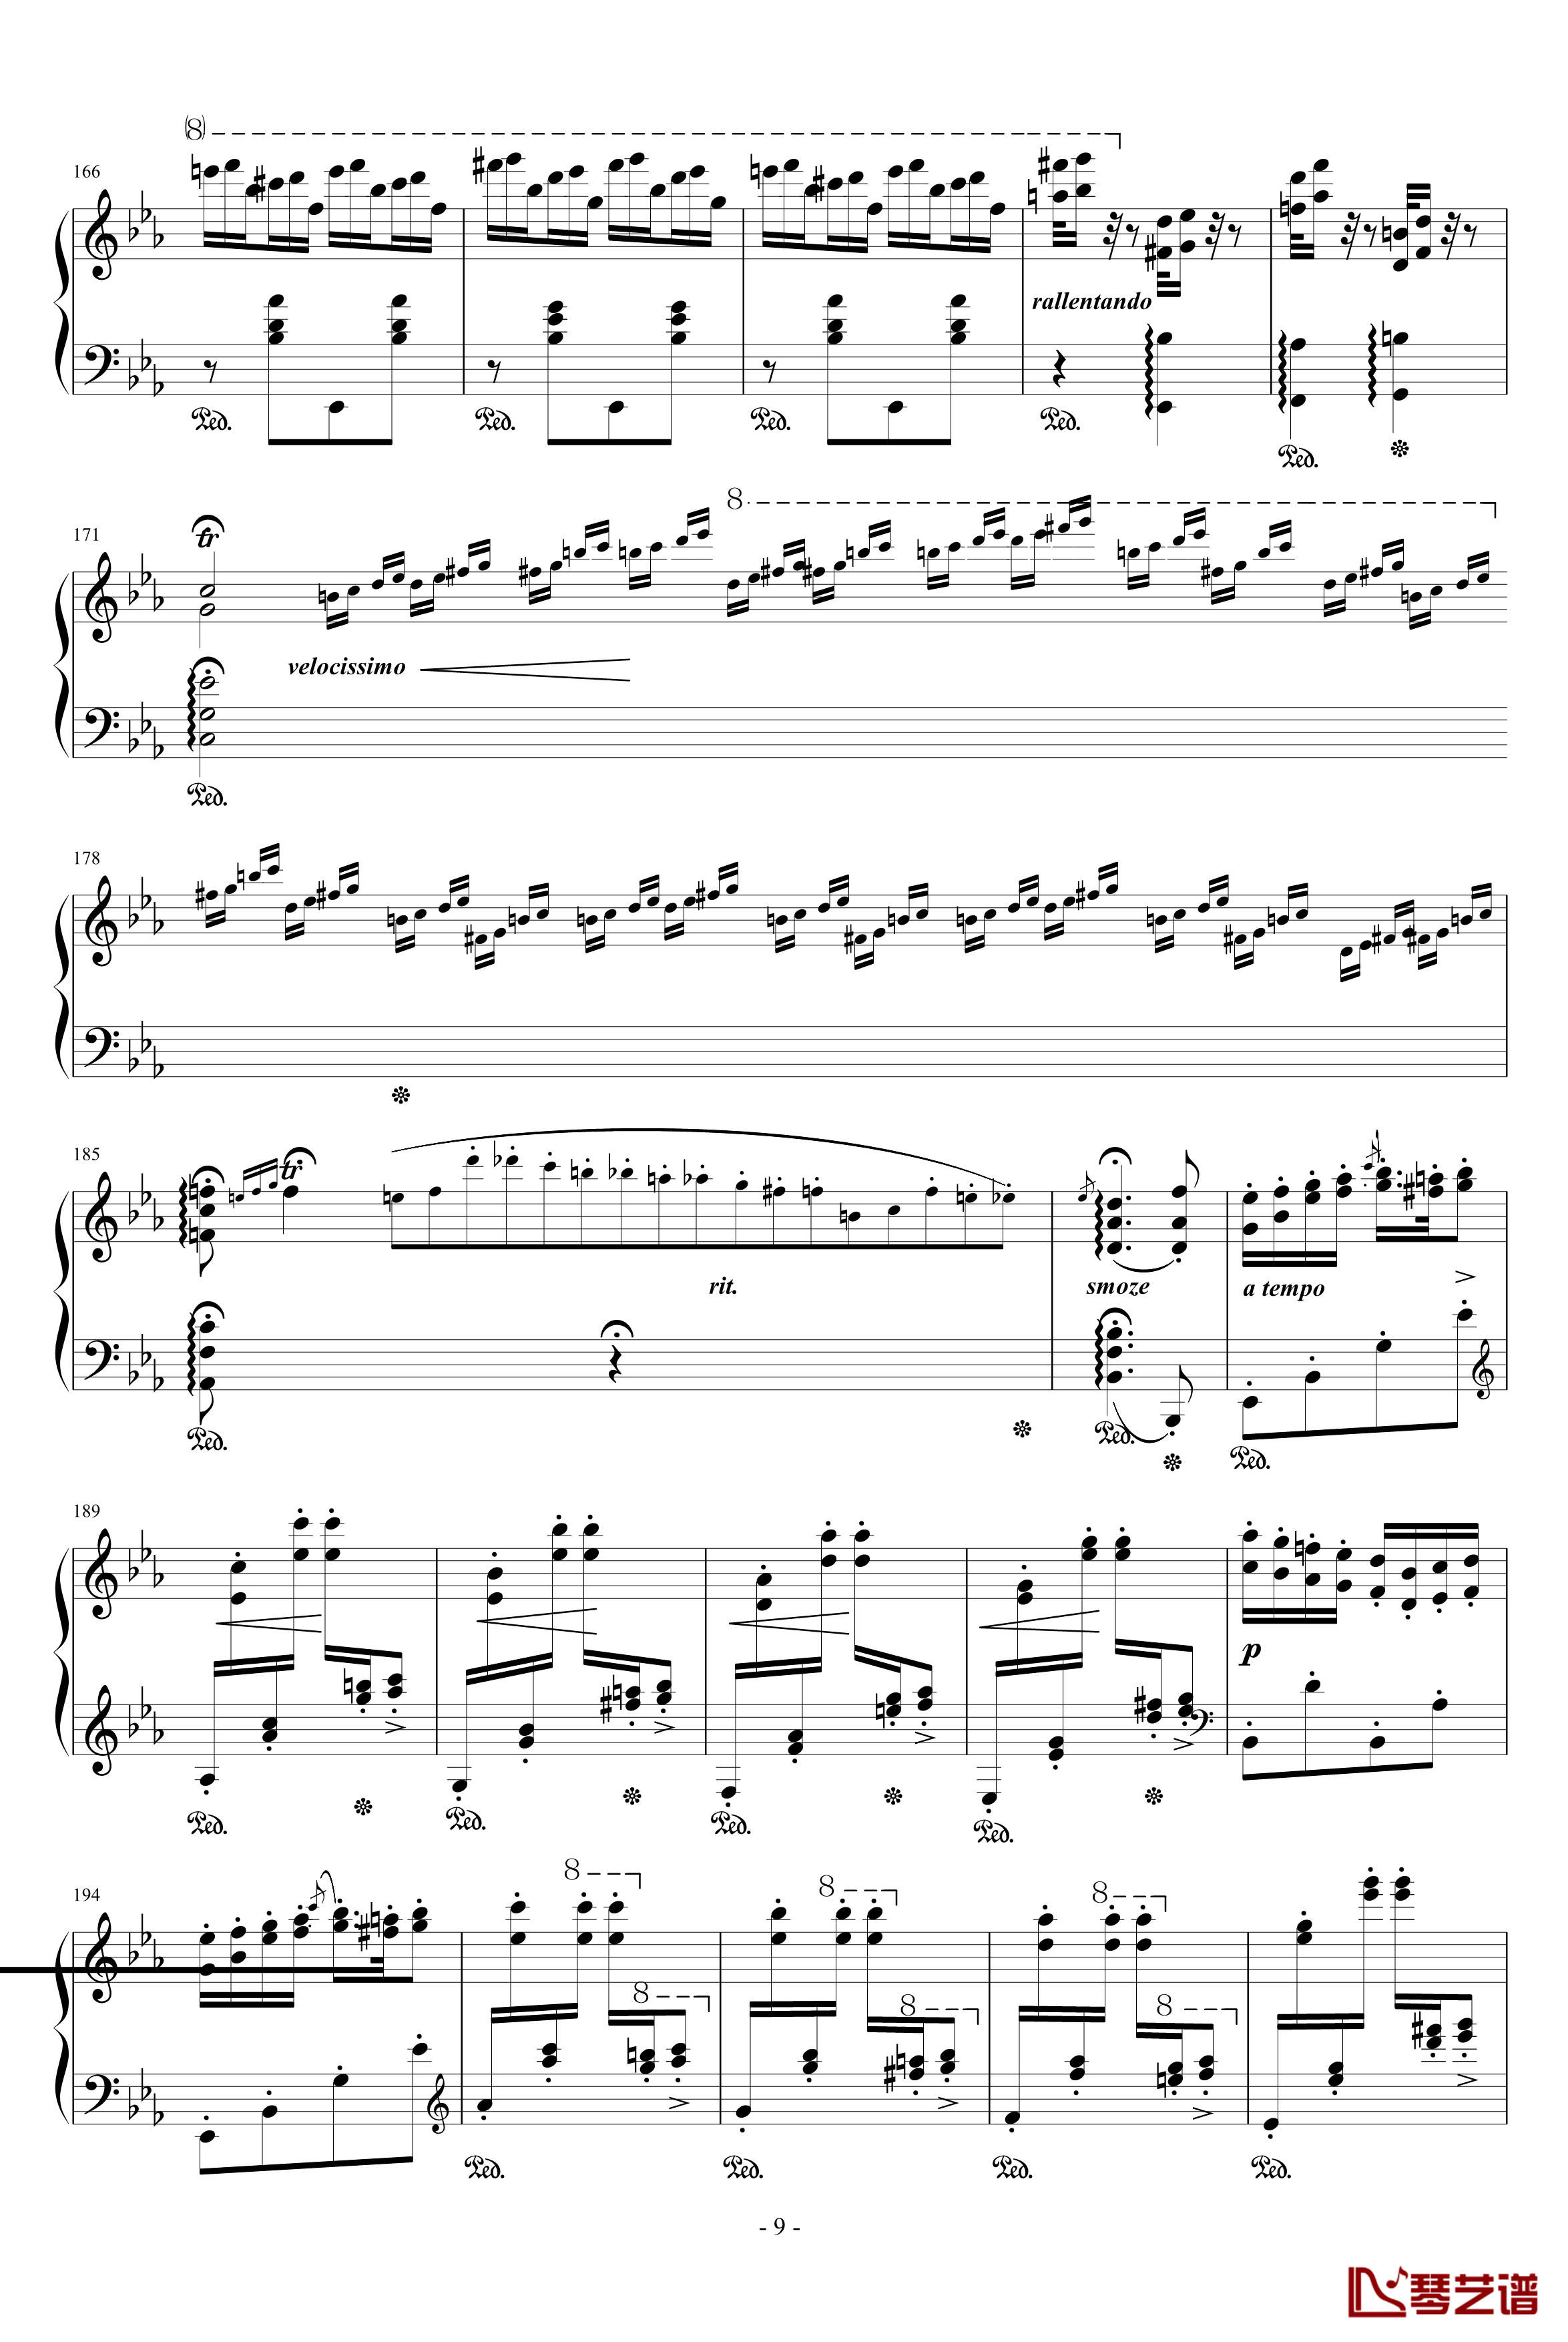 匈牙利狂想曲第9号钢琴谱-19首匈狂里篇幅最浩大、技巧最艰深的作品之一-李斯特9